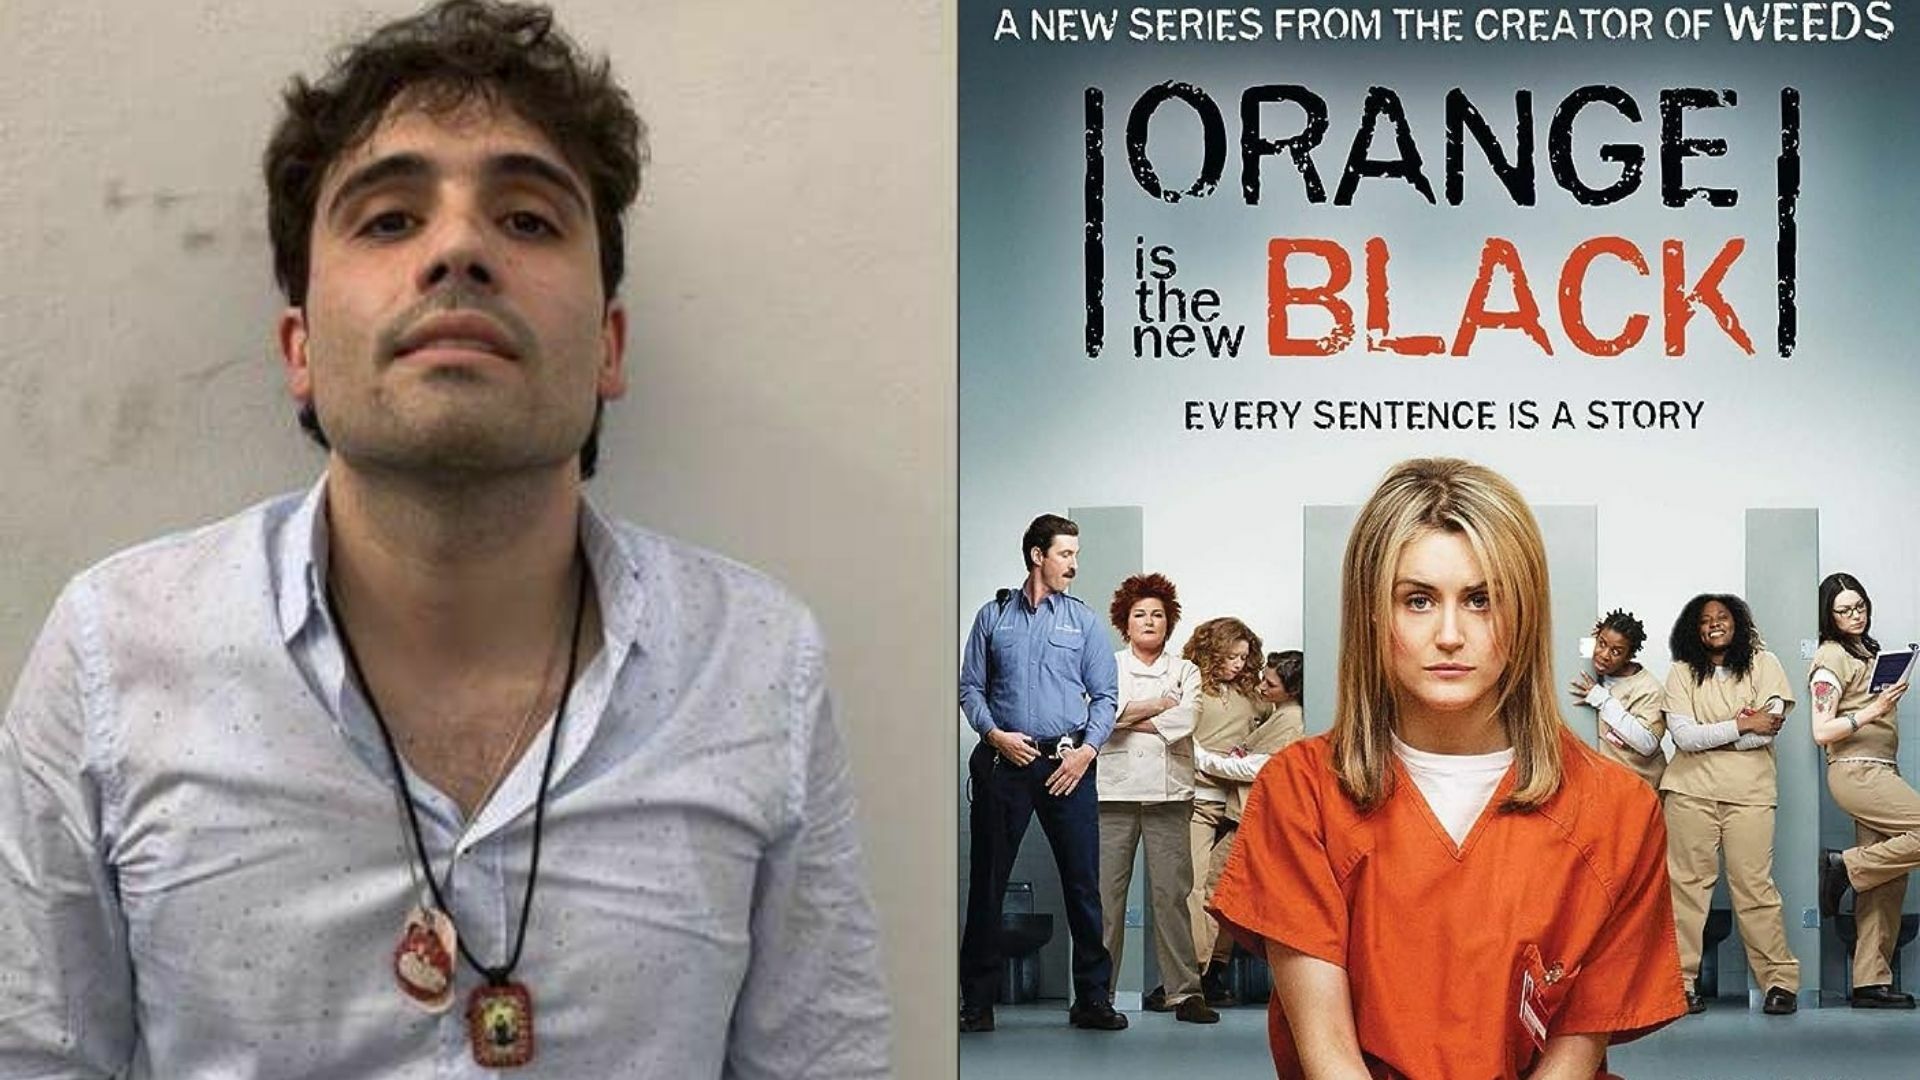 Ovidio Guzmán ingresó a prisión en donde estuvo la autora de Orange is the New Black